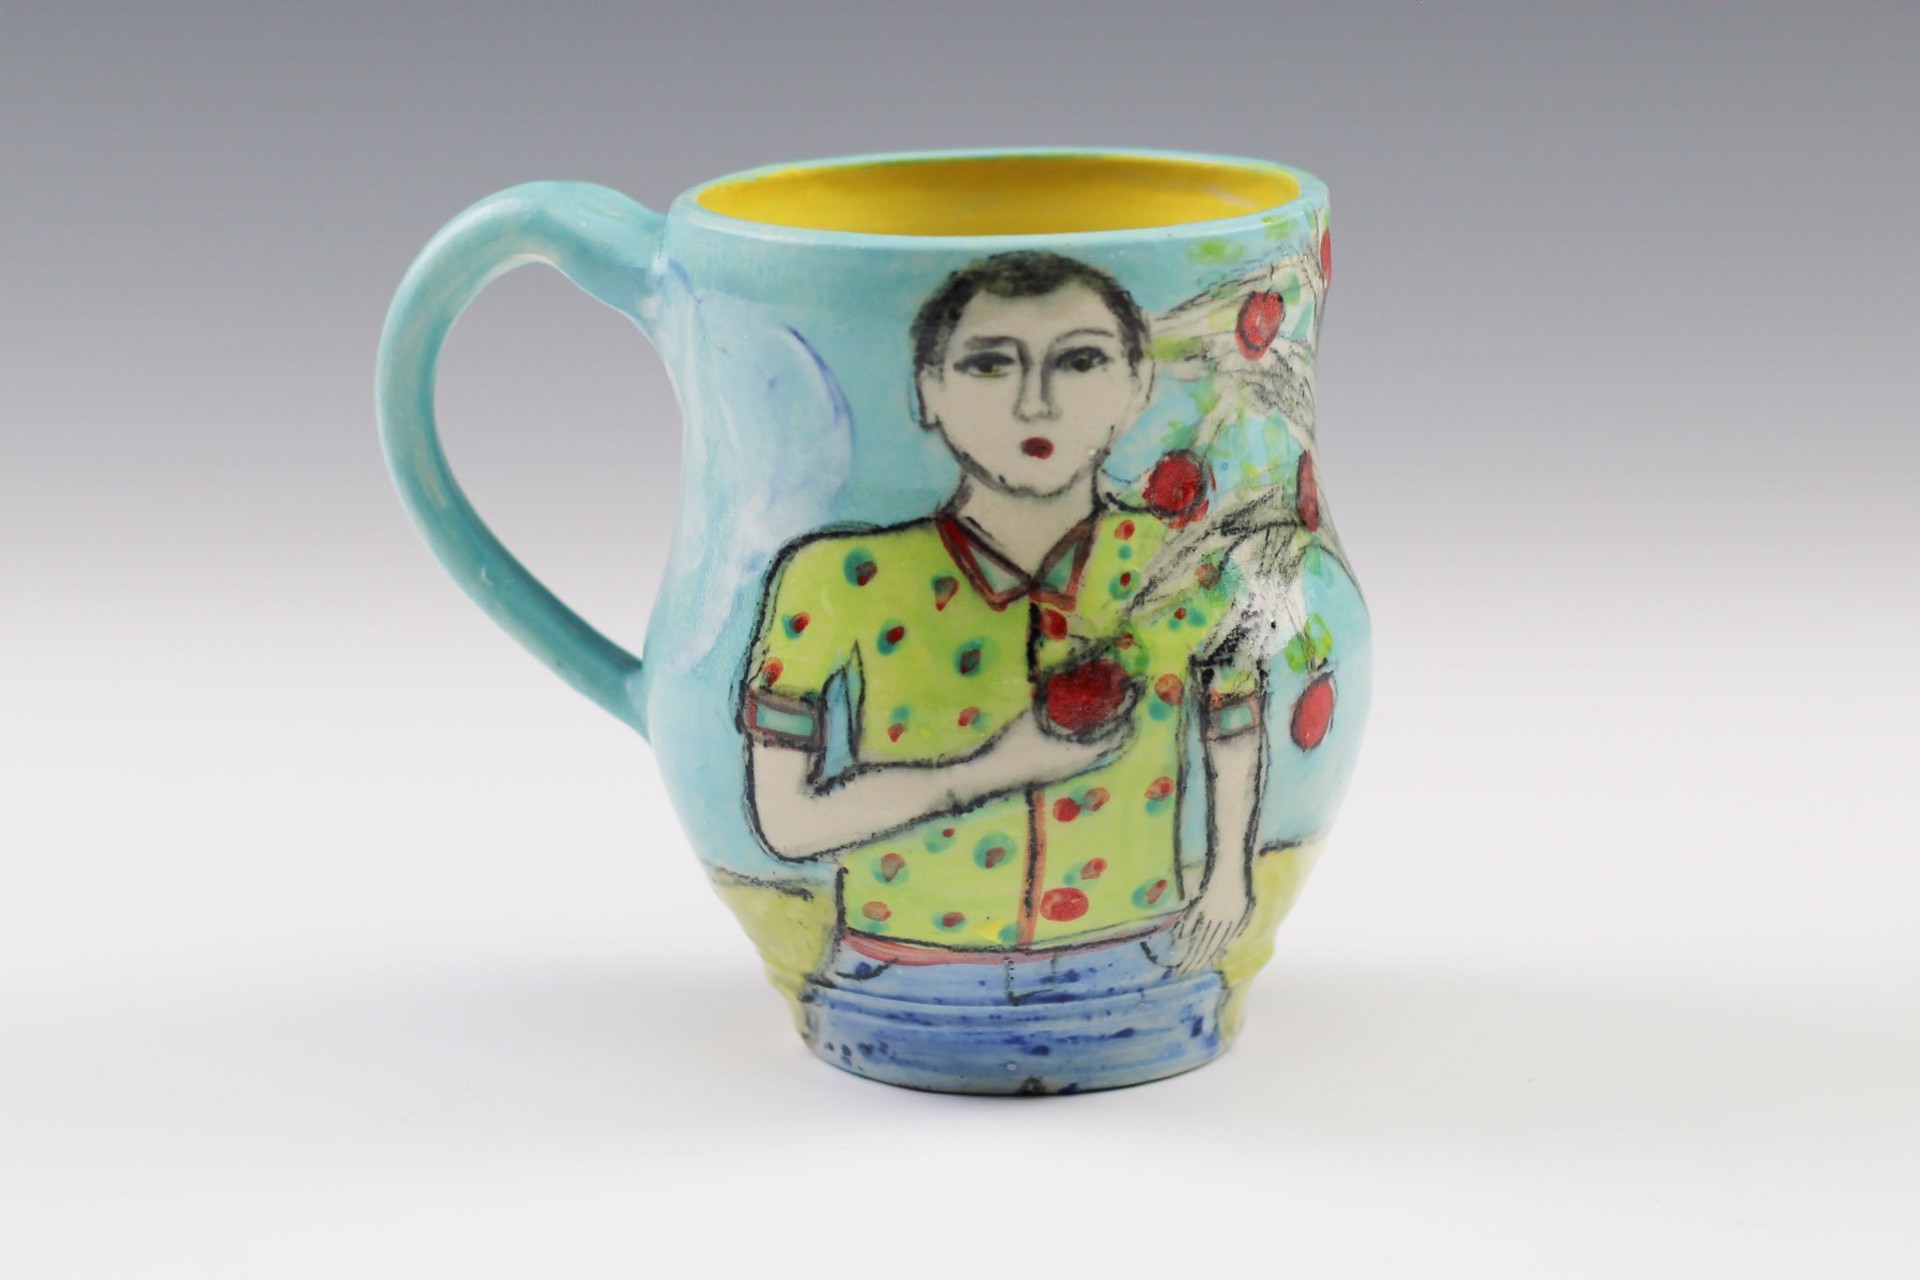 Mug by Wendy Olson